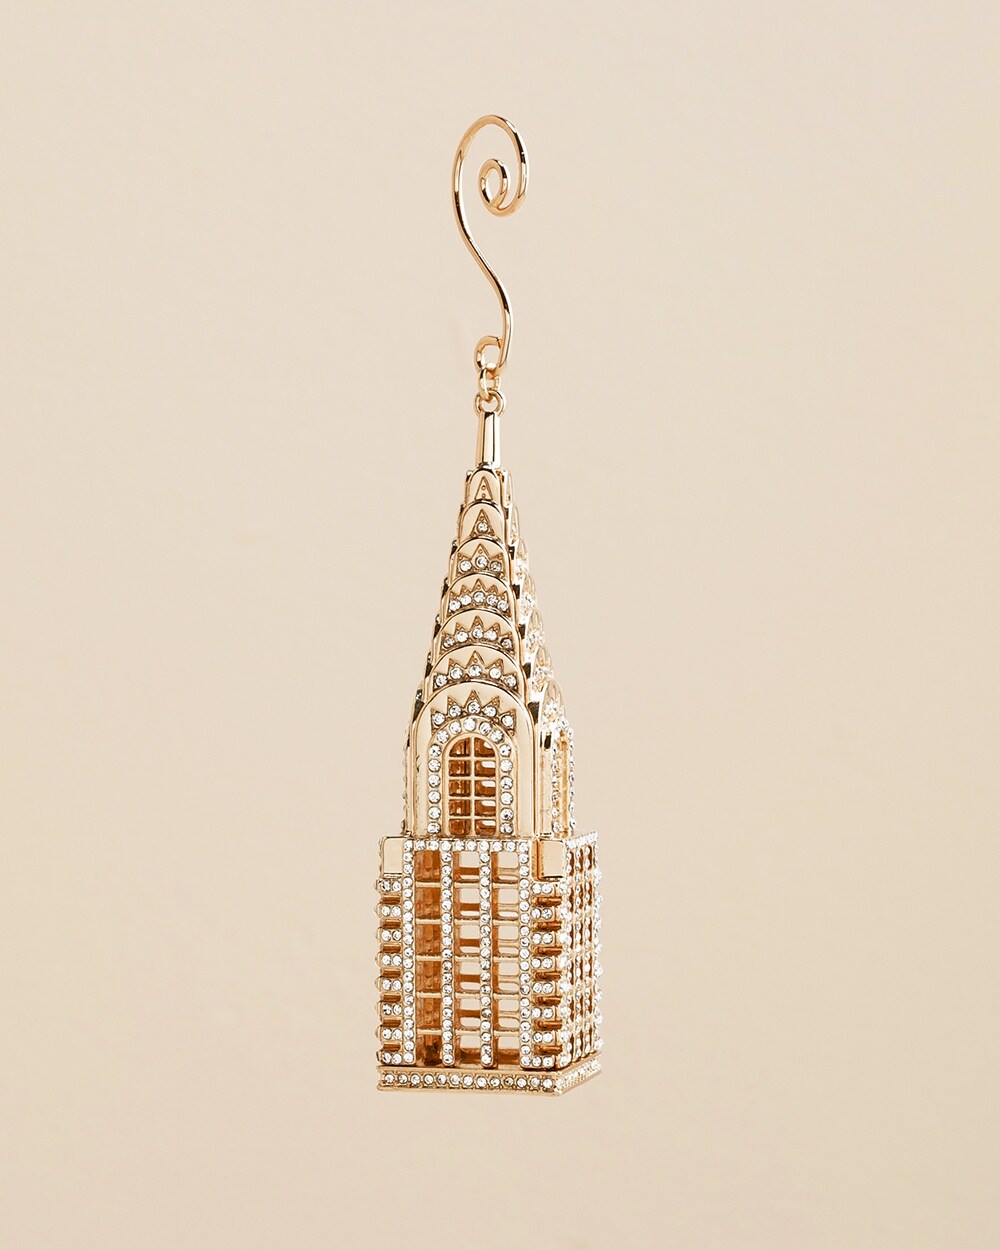 Goldtone Chrysler Building Ornament